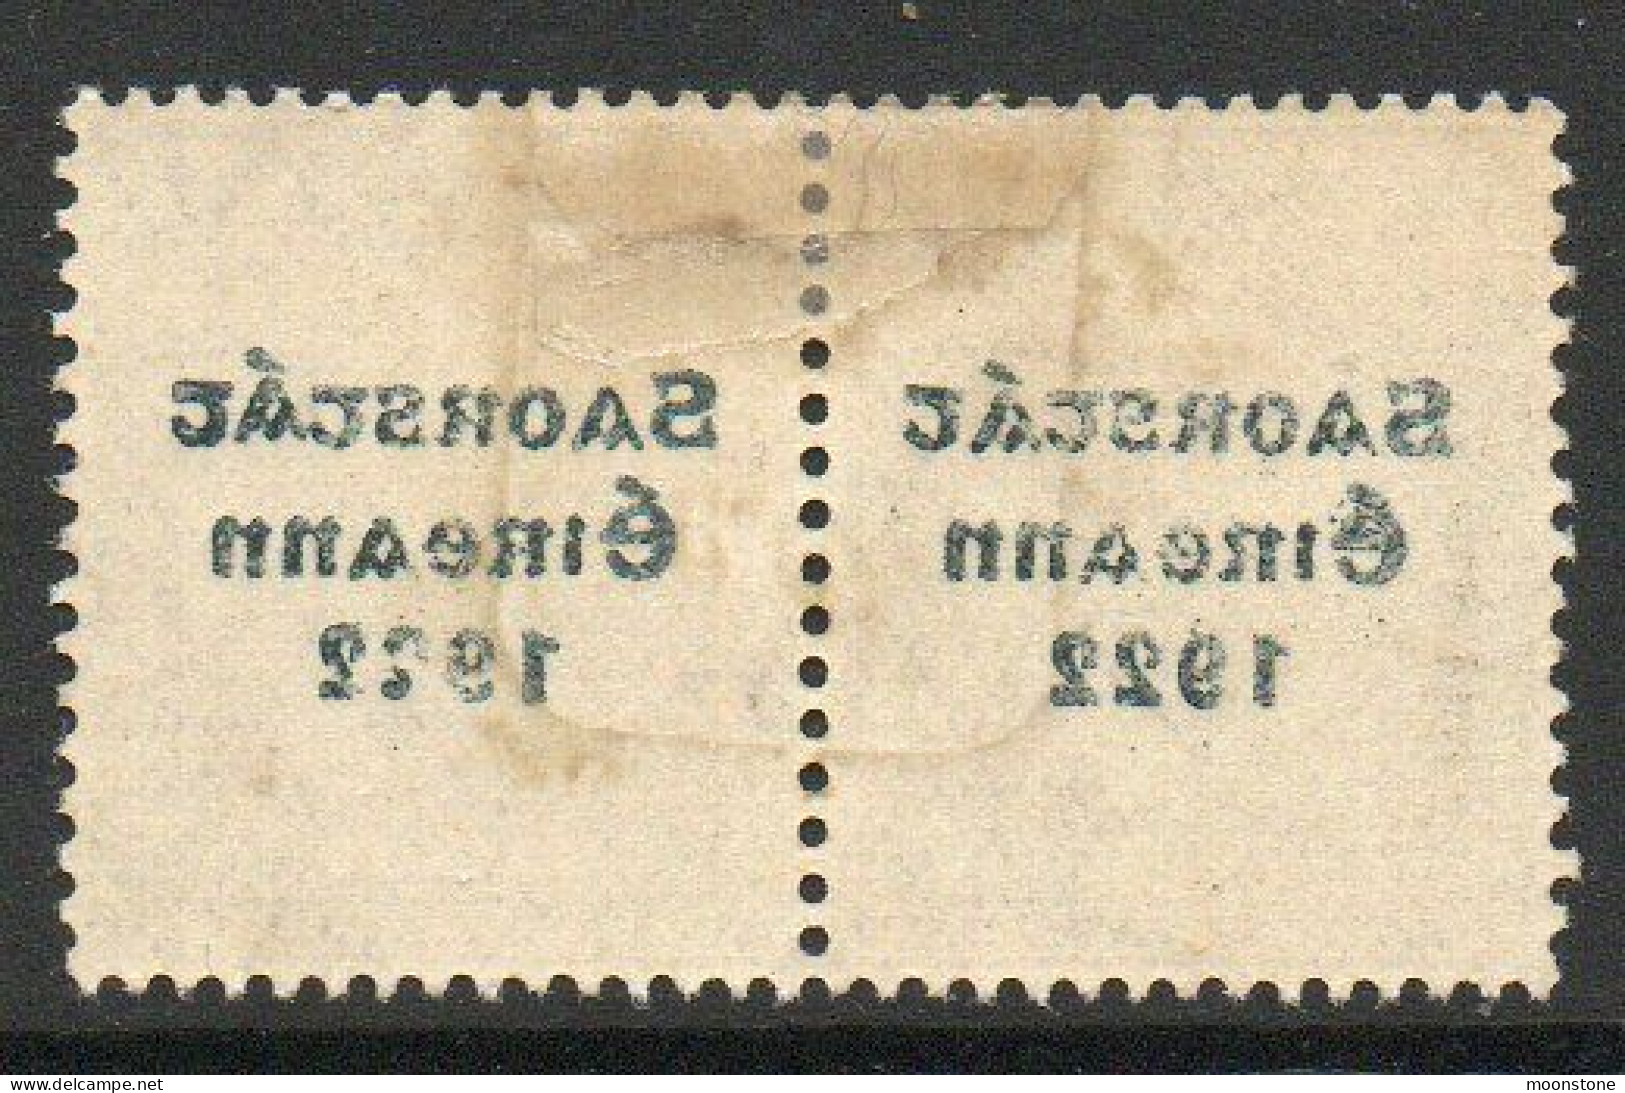 Ireland 1922-3 Saorstat Overprint On 1/- Bistre-brown Pair, Clear Offset On Reverse, SG 63 - Ongebruikt